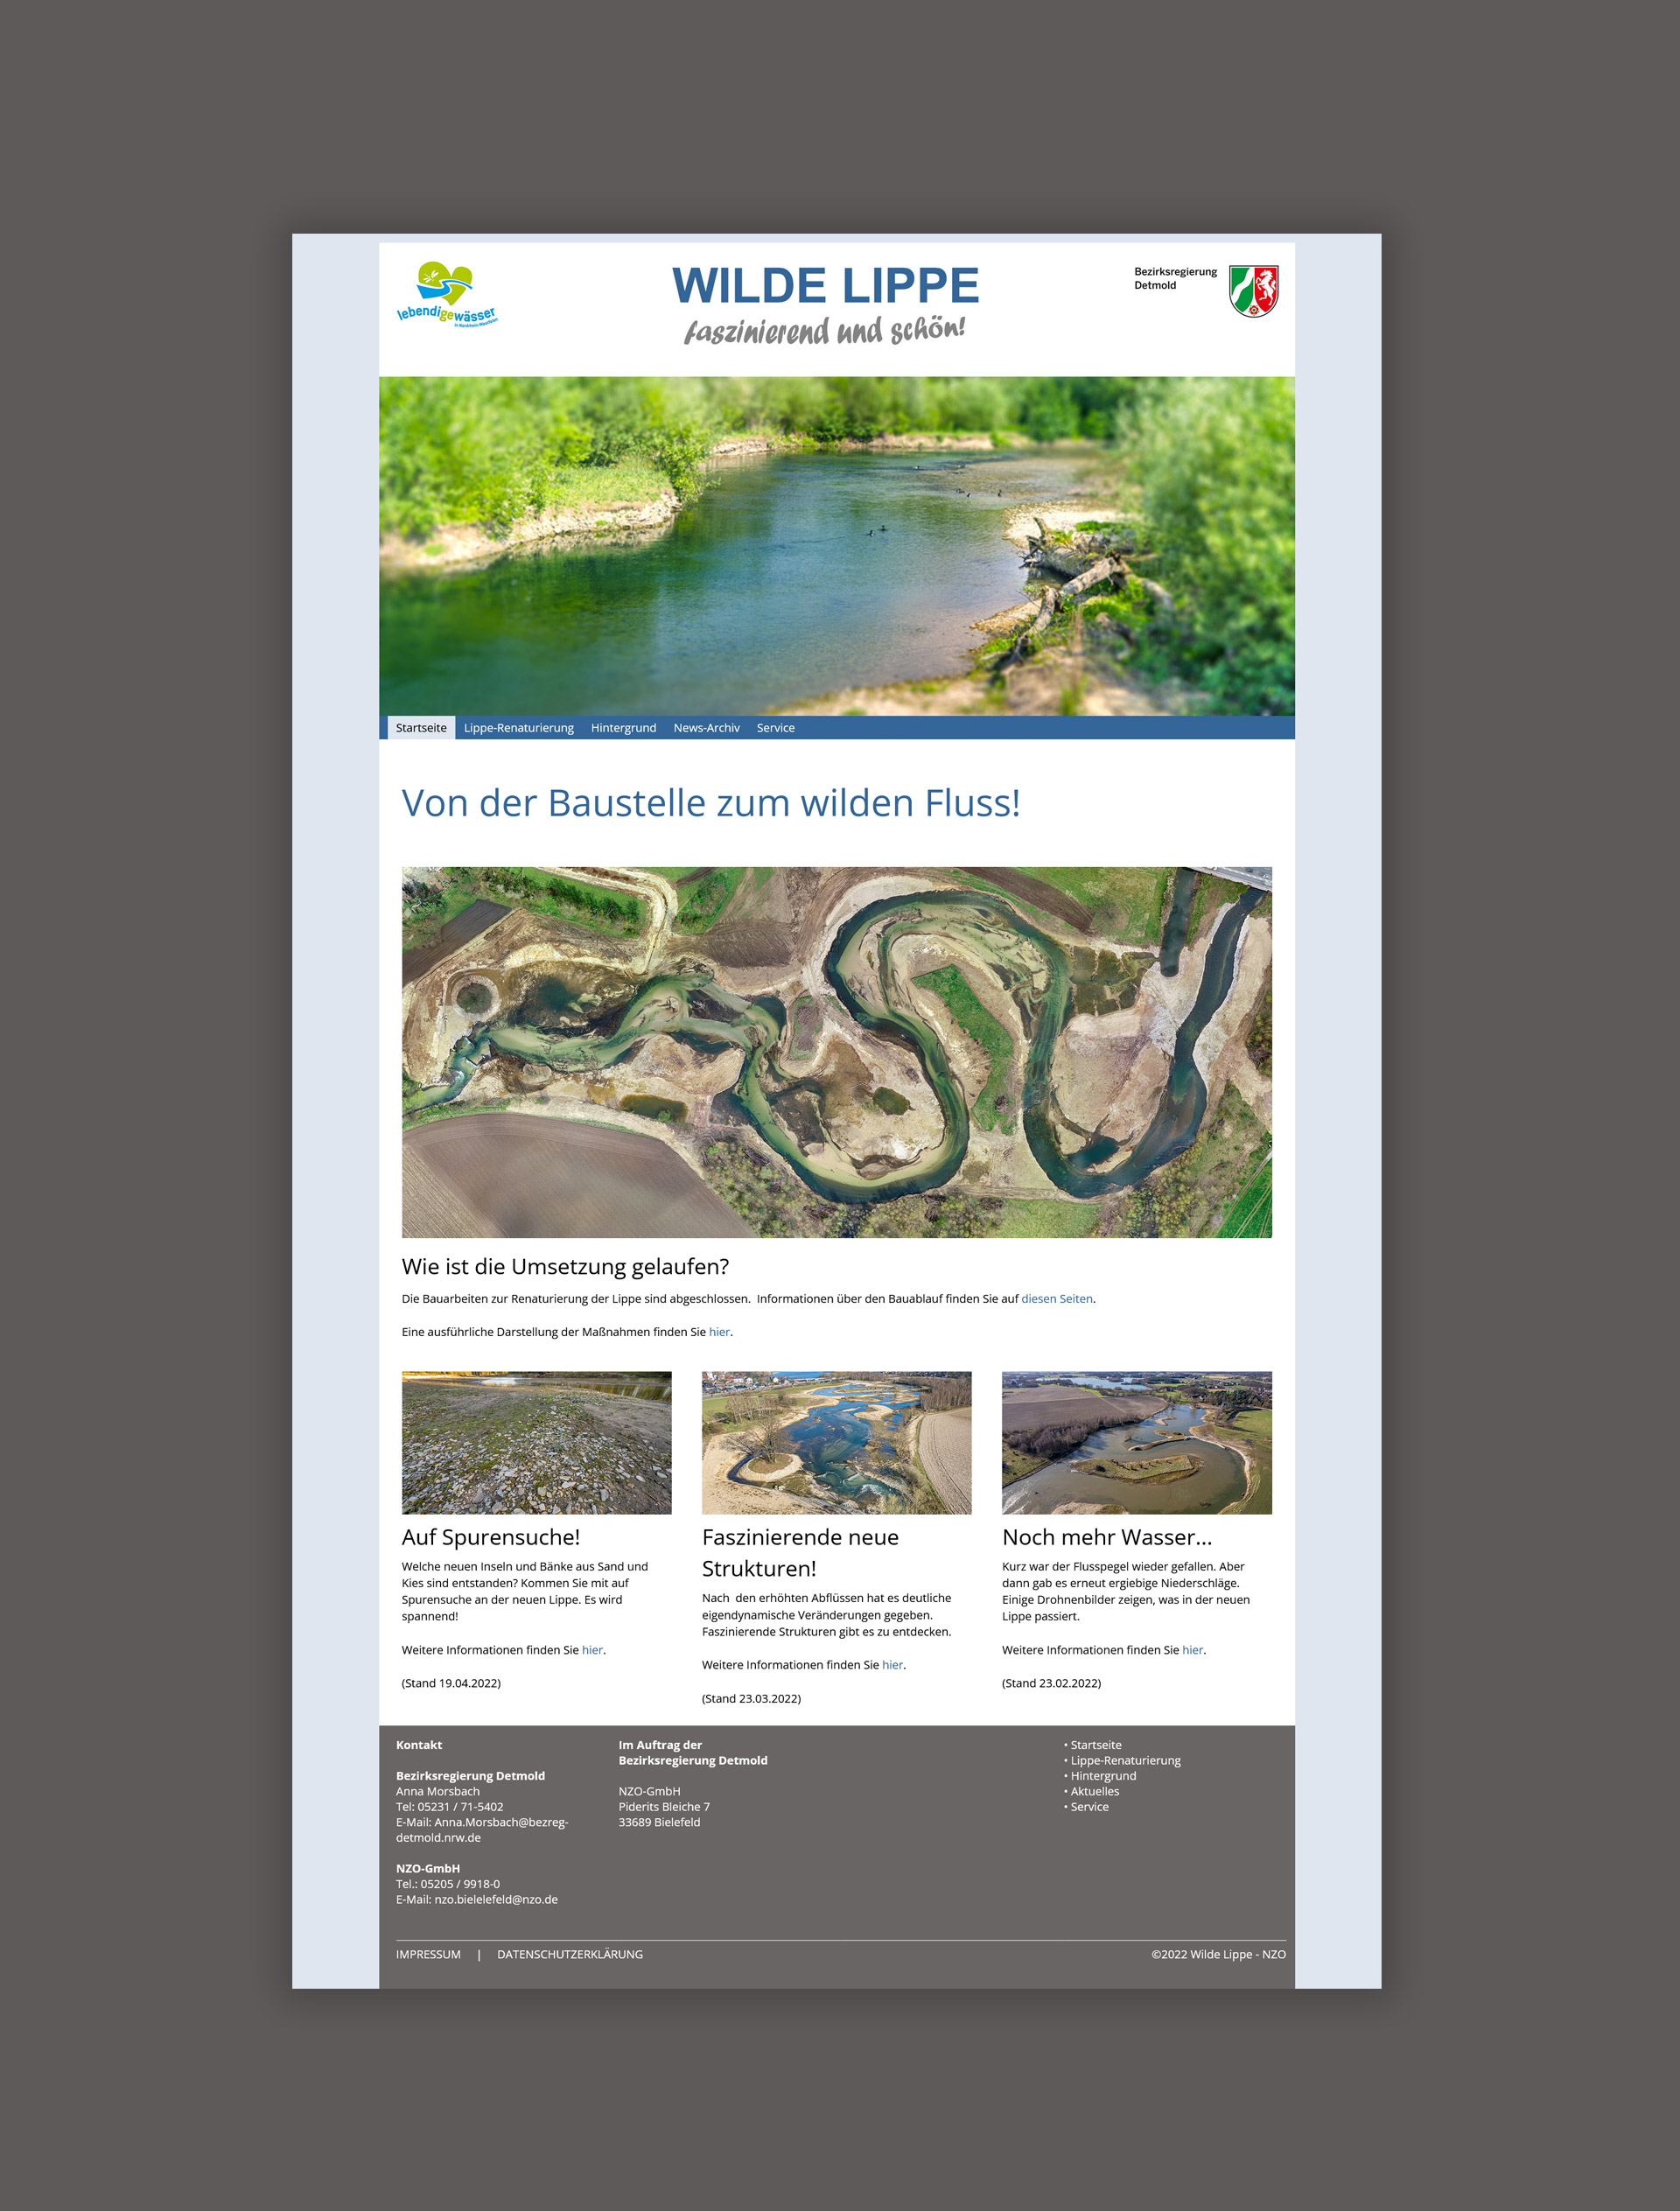 furore Webagentur und Werbeagentur, professionelle Website für Landschaftsplanung Wilde Lippe